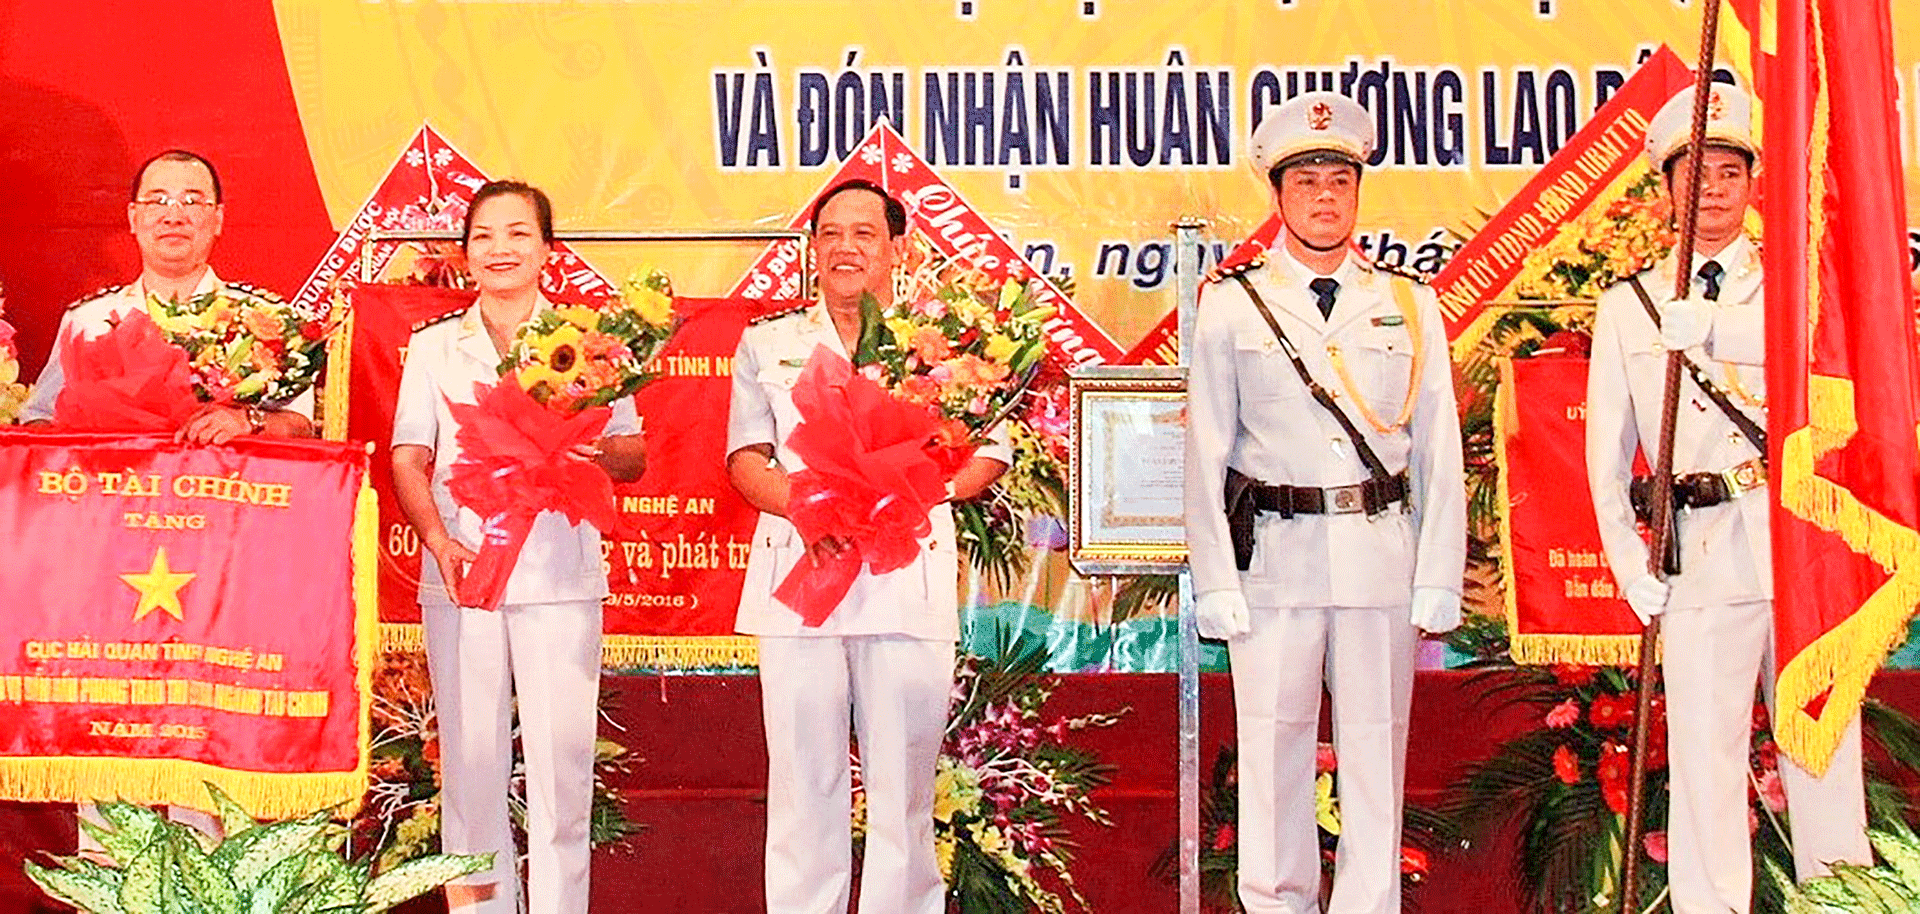 Cục Hải quan tỉnh Nghệ An đón nhận Huân chương Lao động. Ảnh: Hoàng Vĩnh